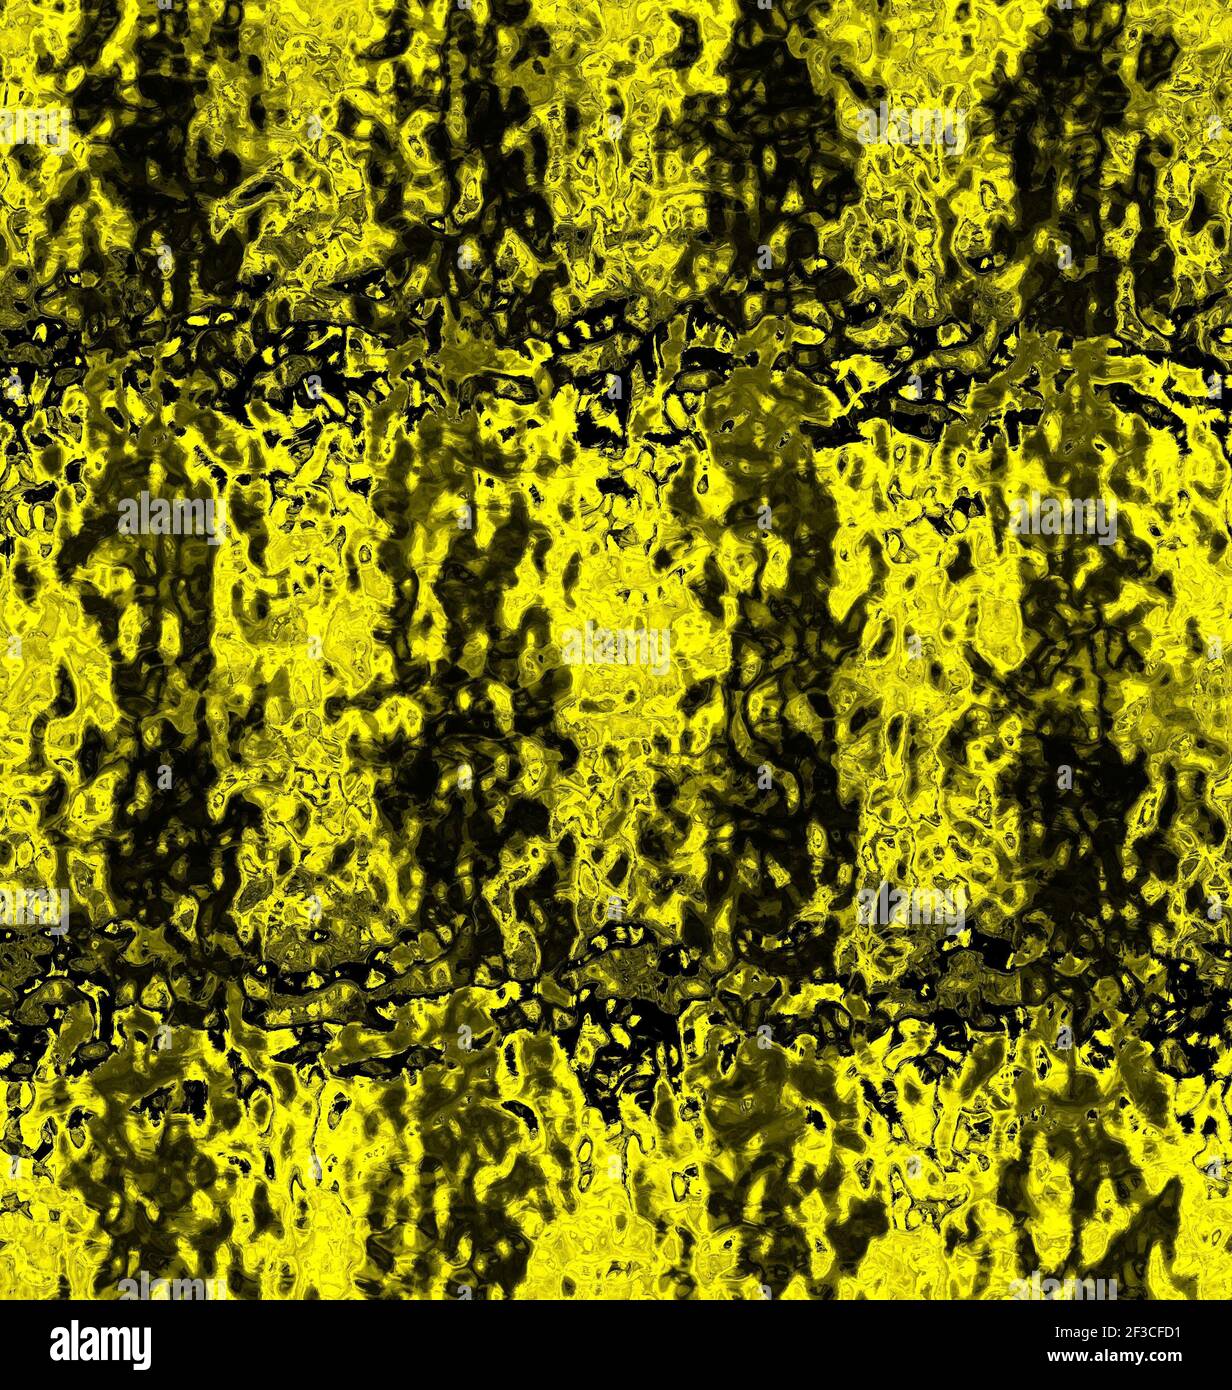 Ein abstraktes Muster in verschwommenem öligen Gelb und dunklen Farben Stockfoto